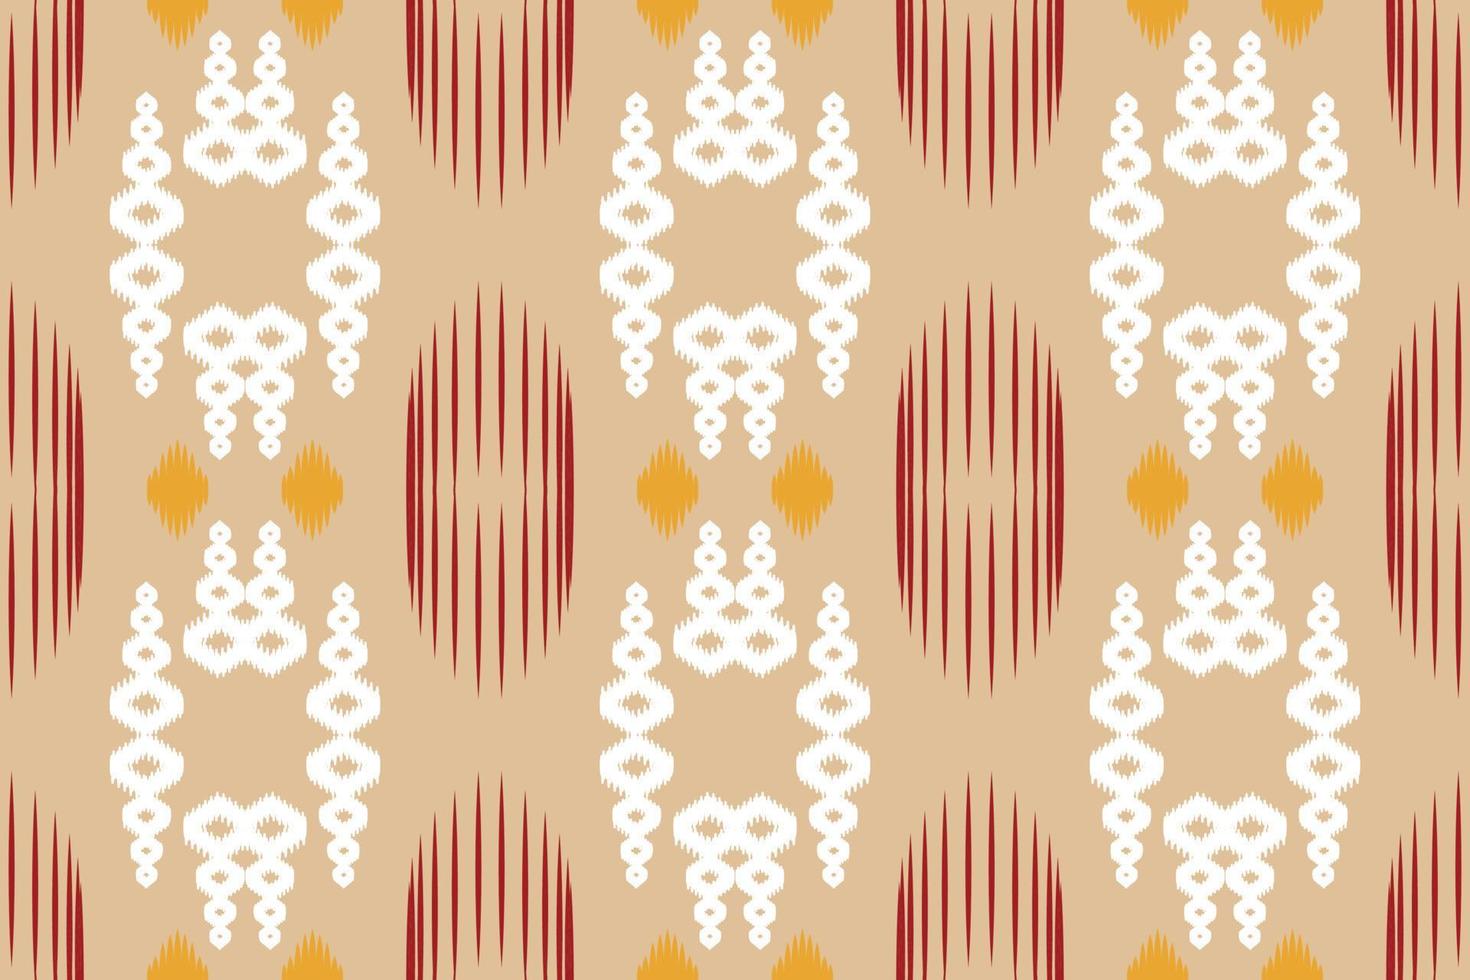 motif harmonieux d'afrique tribale florale ikat. ethnique géométrique batik ikkat numérique vecteur conception textile pour impressions tissu sari mughal brosse symbole andains texture kurti kurtis kurtas